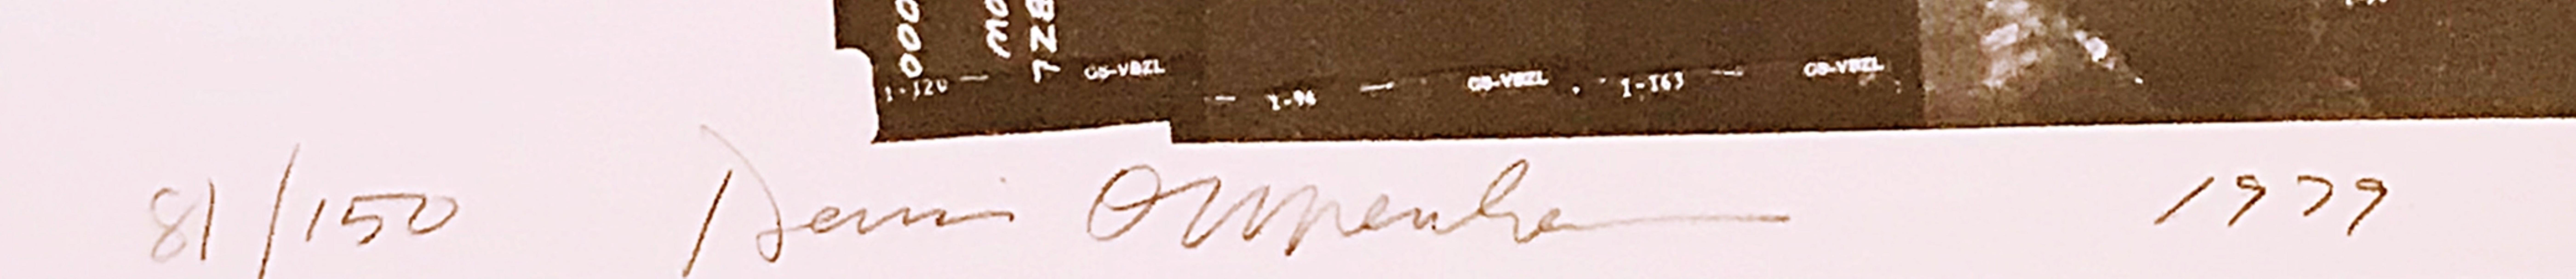 Dennis Oppenheim
Étoiles Missoula Montana, 1979
Lithographie sur papier de couverture Arches
Signé et daté à la main au recto, édition 81/150
41 × 30 pouces 
(livré roulé dans un tube de 35 x 5 x 5)
Non encadré

Crayon signé et numéroté de l'édition